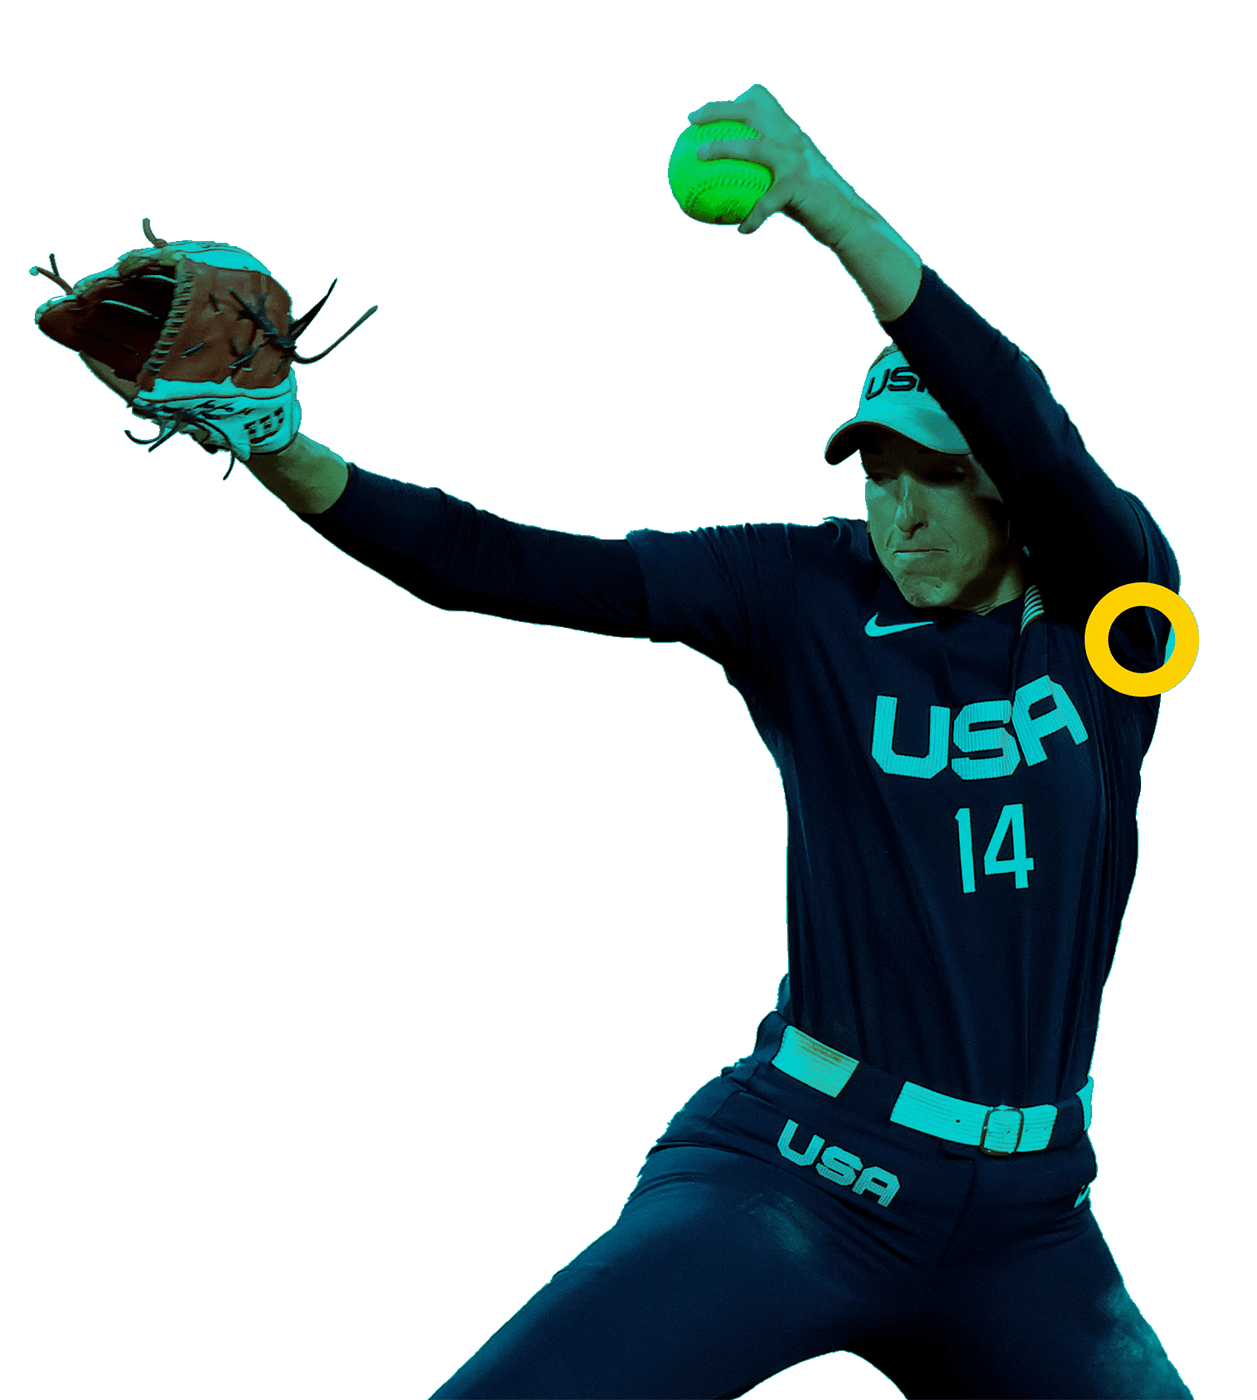 En la foto, un jugador de softbol con la pelota en la mano y la otra con su guante.